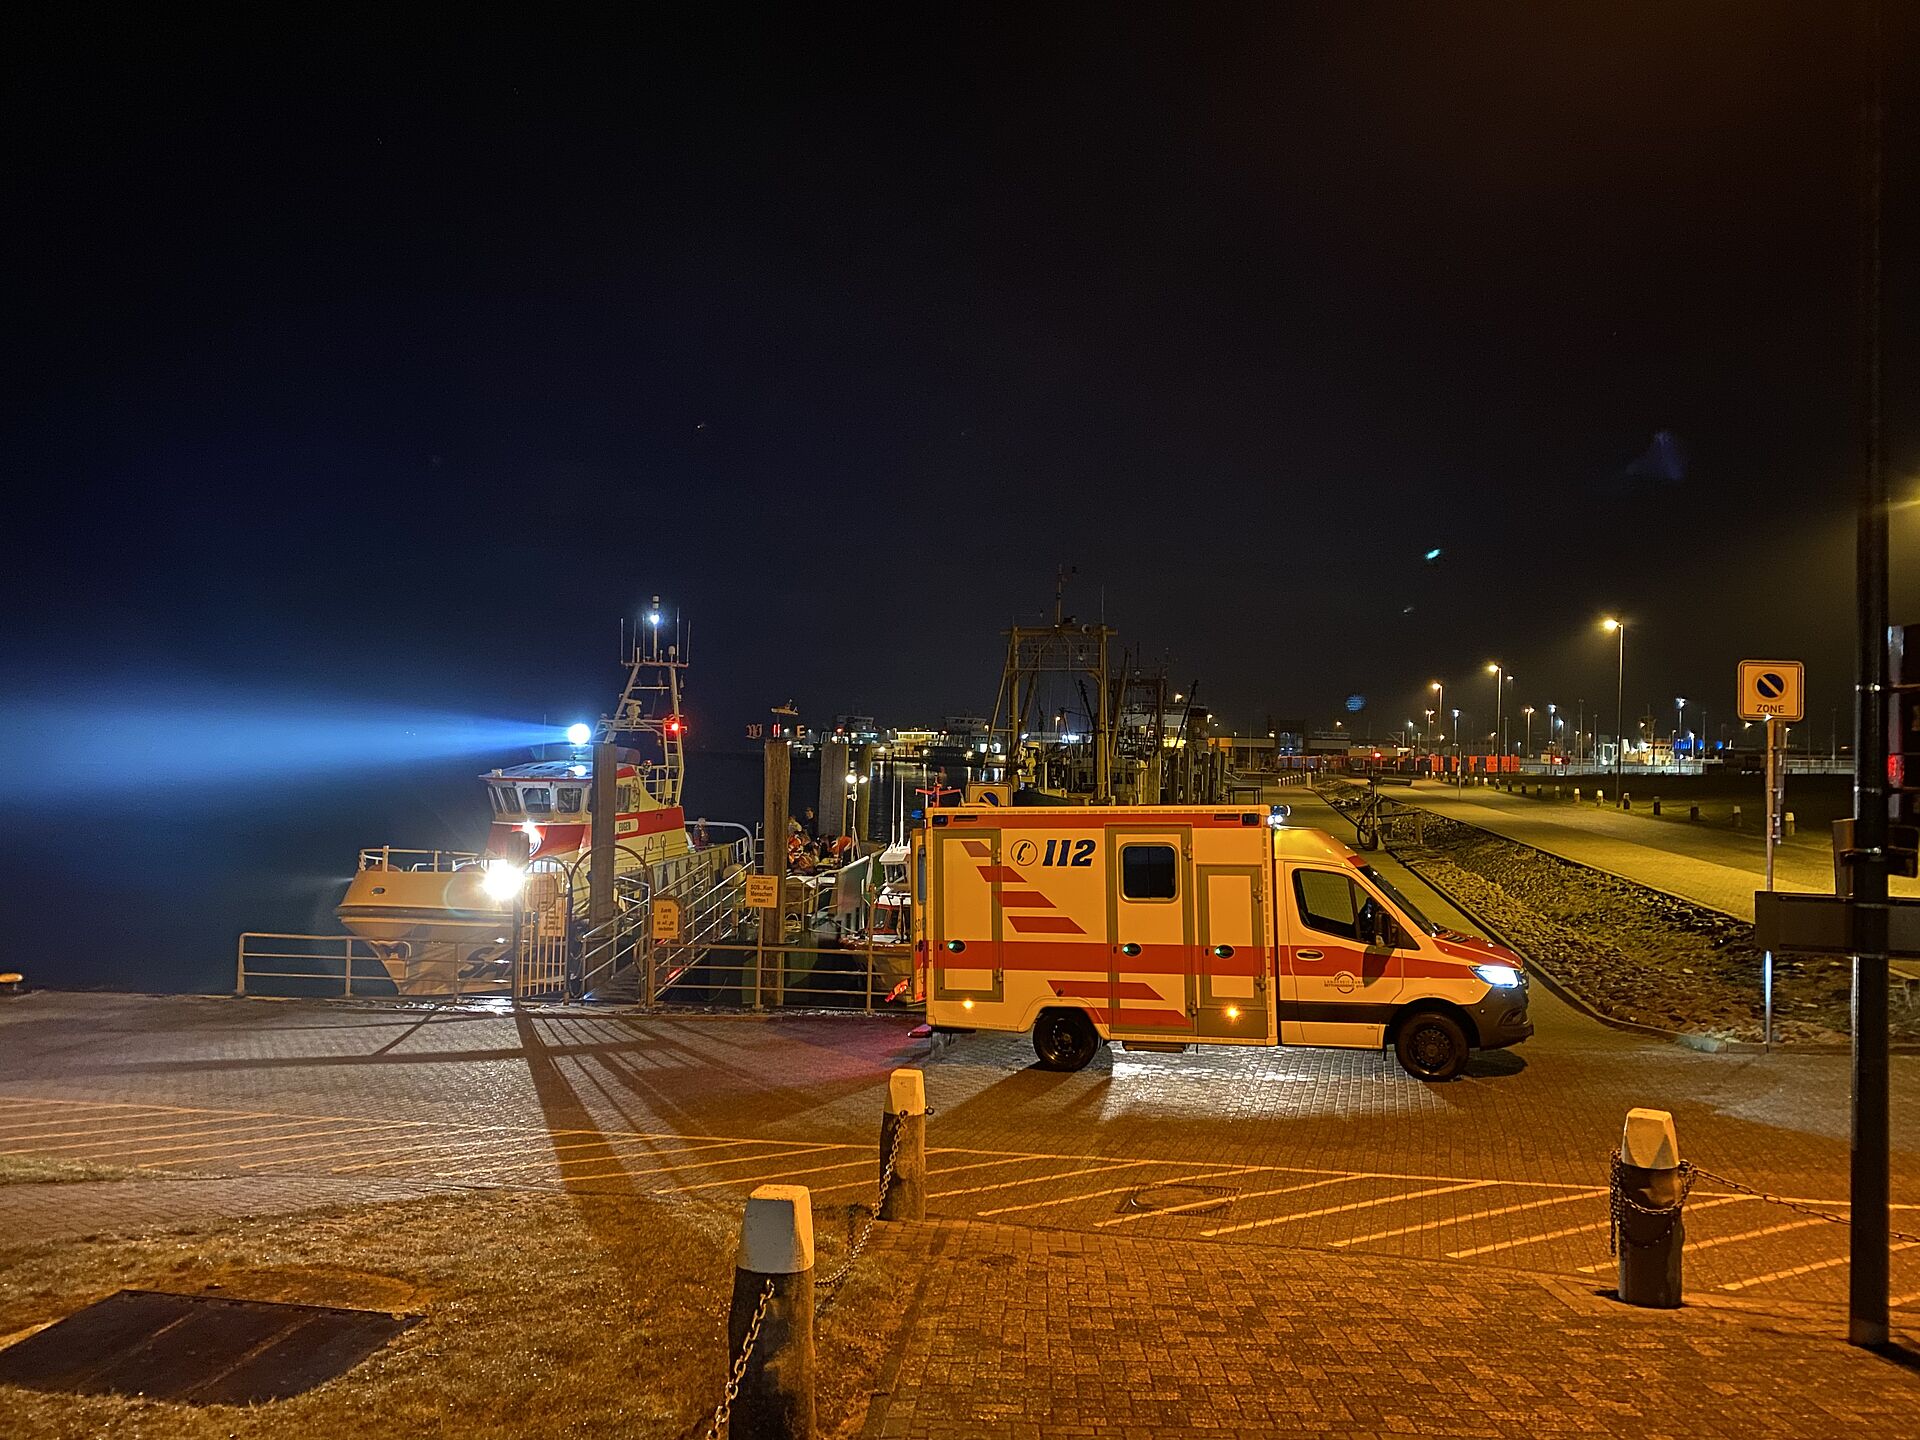 Nachtszene im Hafen: Im Vordergrund am Anleger steht ein Rettungswagen, dahinter hat ein Seenotreettungskreuzer festgemacht. Seine Scheinwerfer leuchten in den dunklen Himmel über dem Hafengelände.